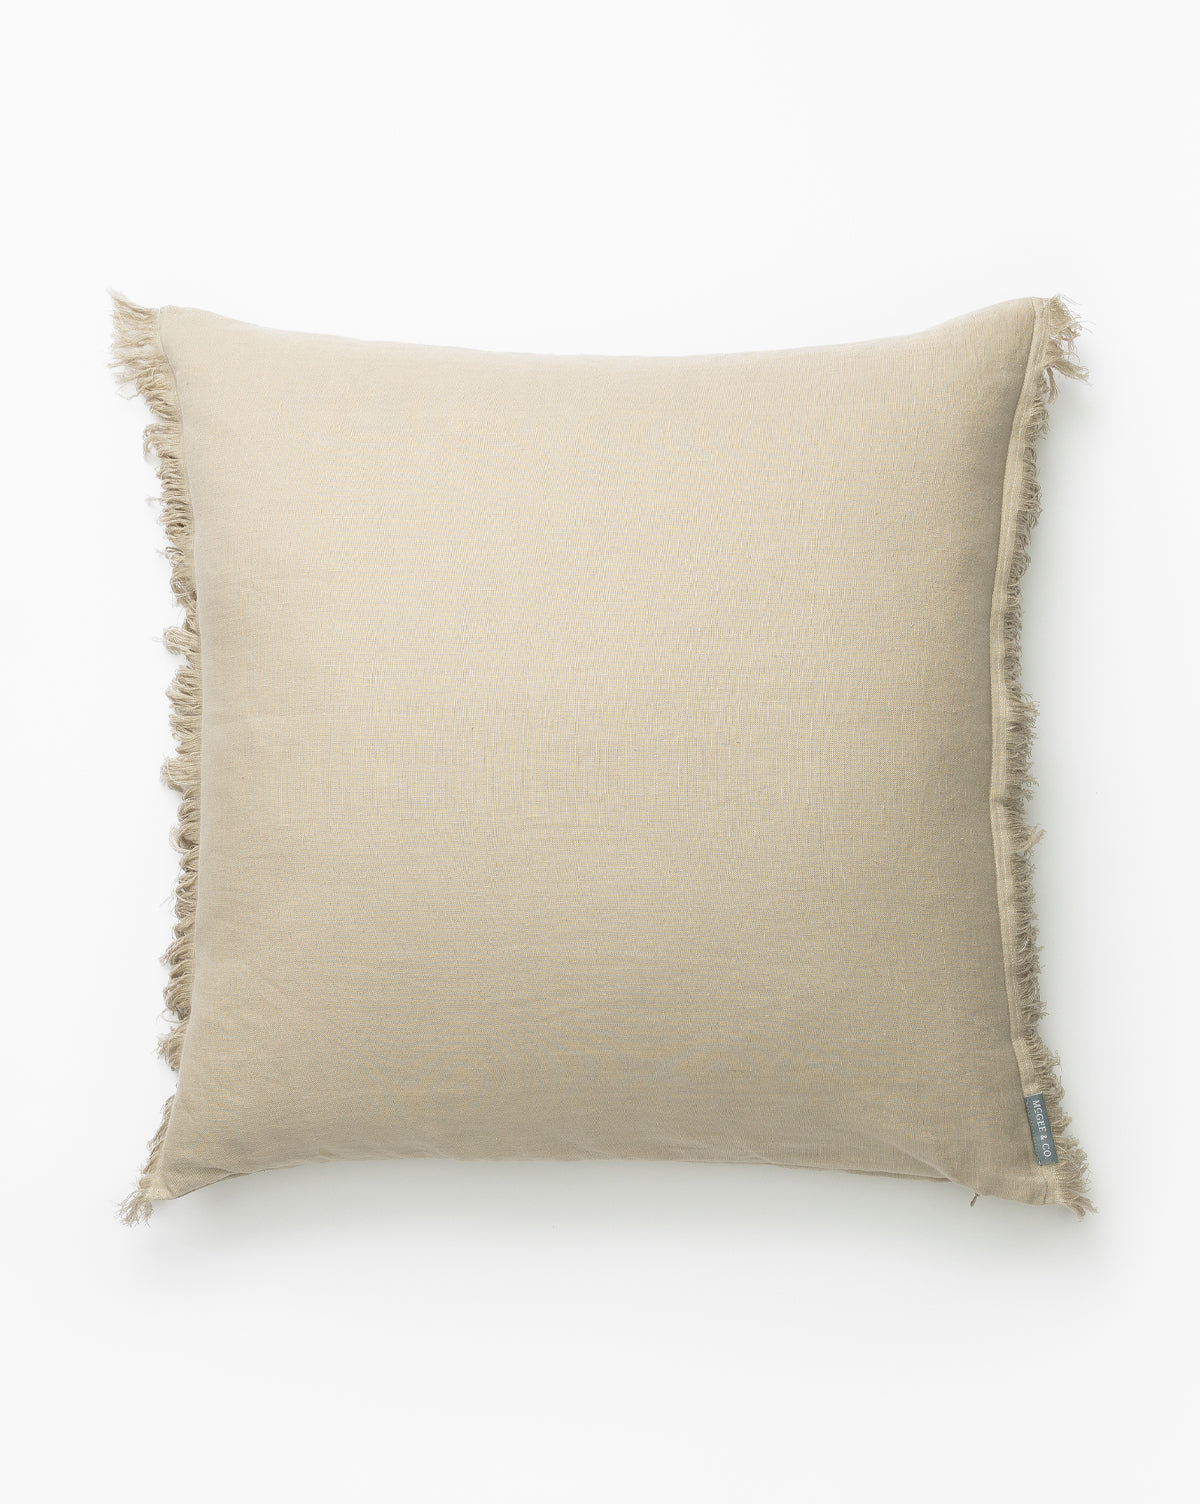 Renuka Inc., Hazelton Mushroom Fringed Pillow Cover